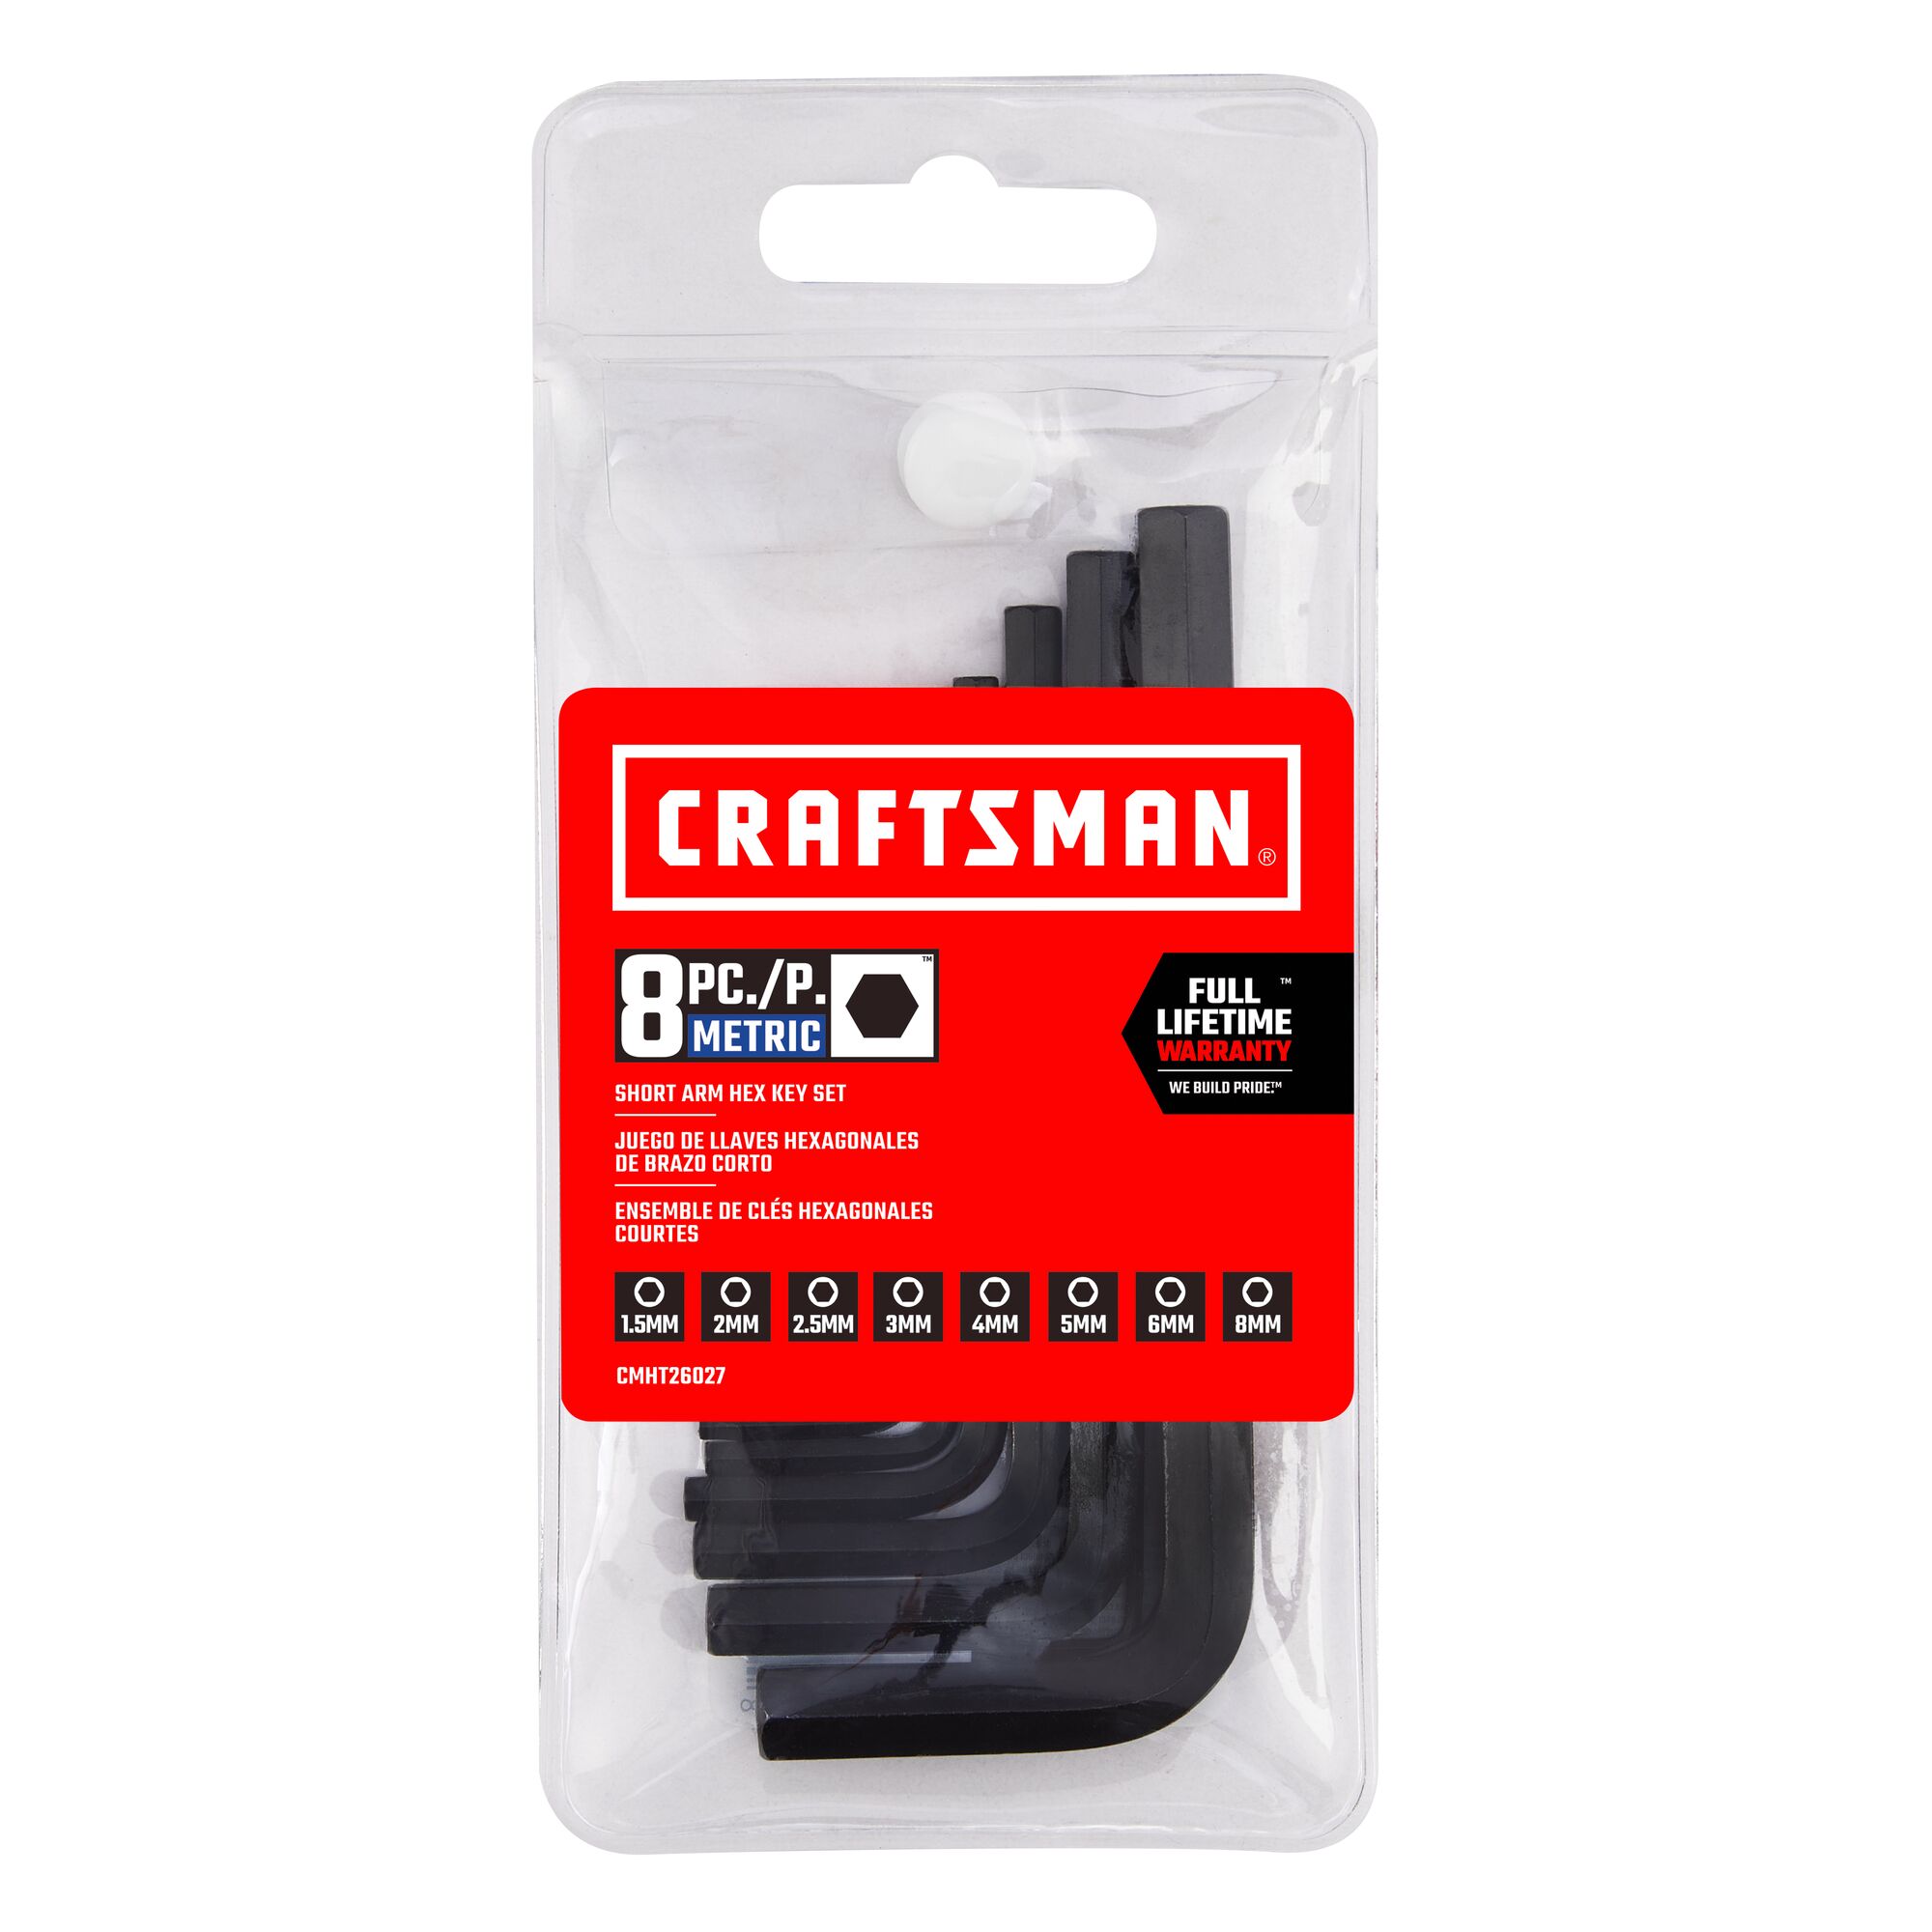 View of CRAFTSMAN Screwdrivers: Hex Keys packaging